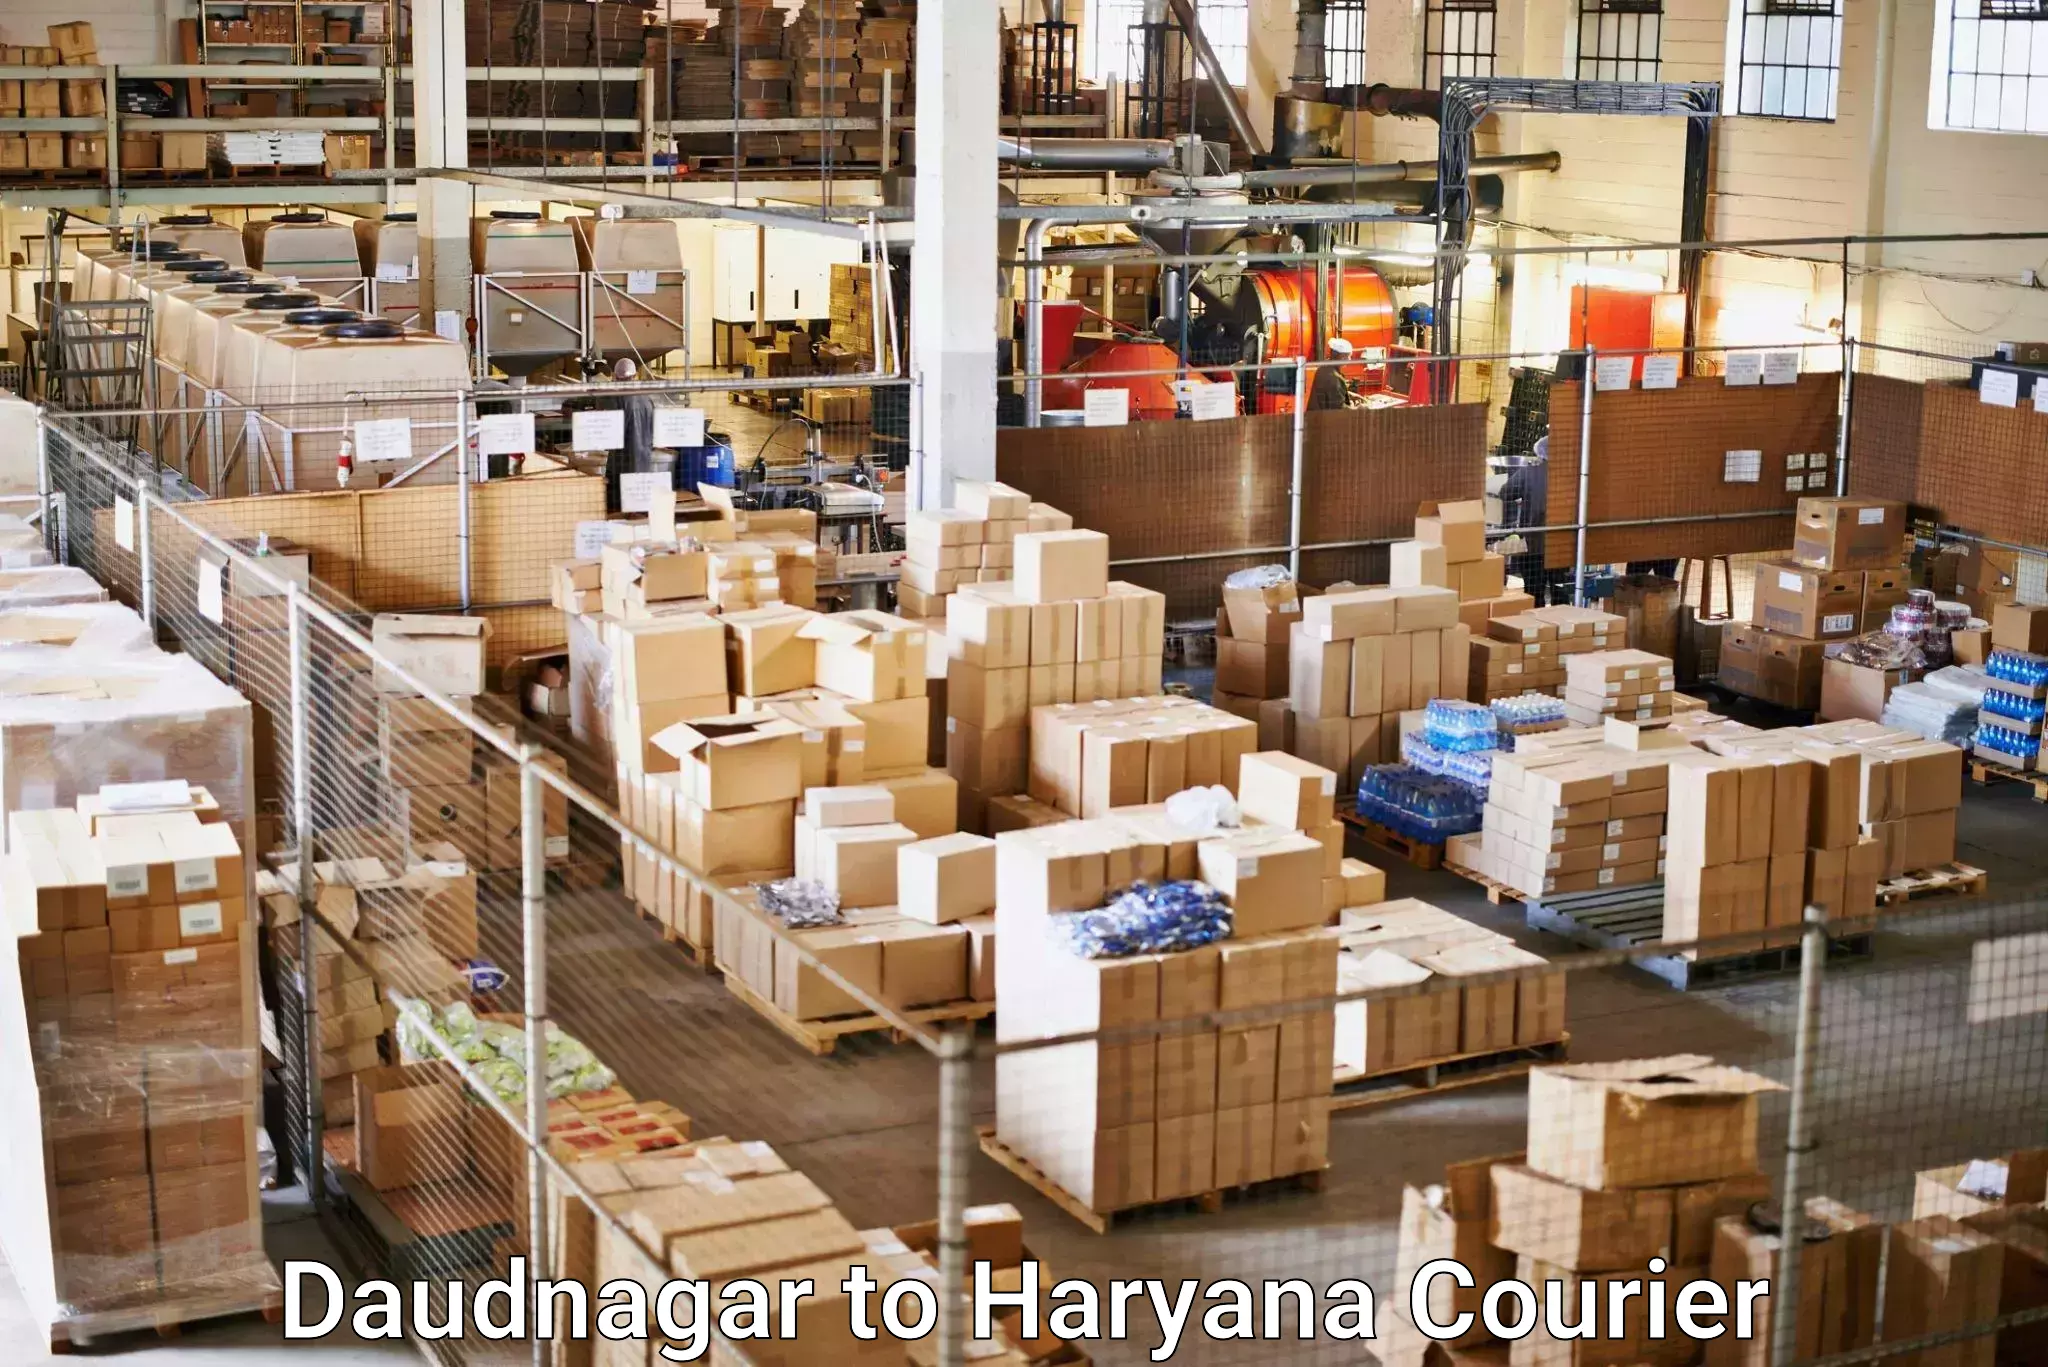 High-capacity shipping options Daudnagar to Haryana